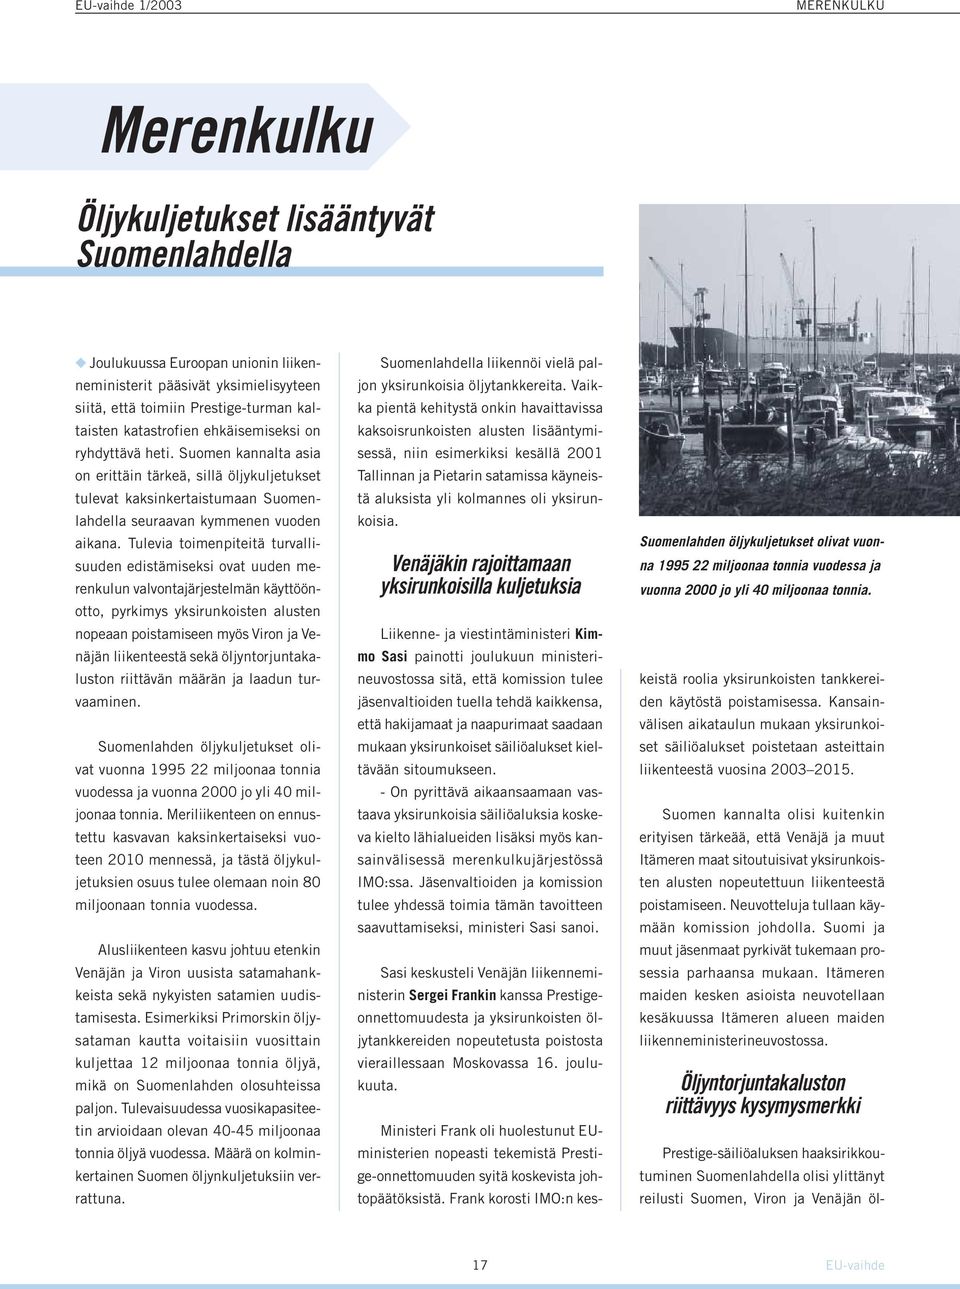 Tulevia toimenpiteitä turvallisuuden edistämiseksi ovat uuden merenkulun valvontajärjestelmän käyttöönotto, pyrkimys yksirunkoisten alusten nopeaan poistamiseen myös Viron ja Venäjän liikenteestä